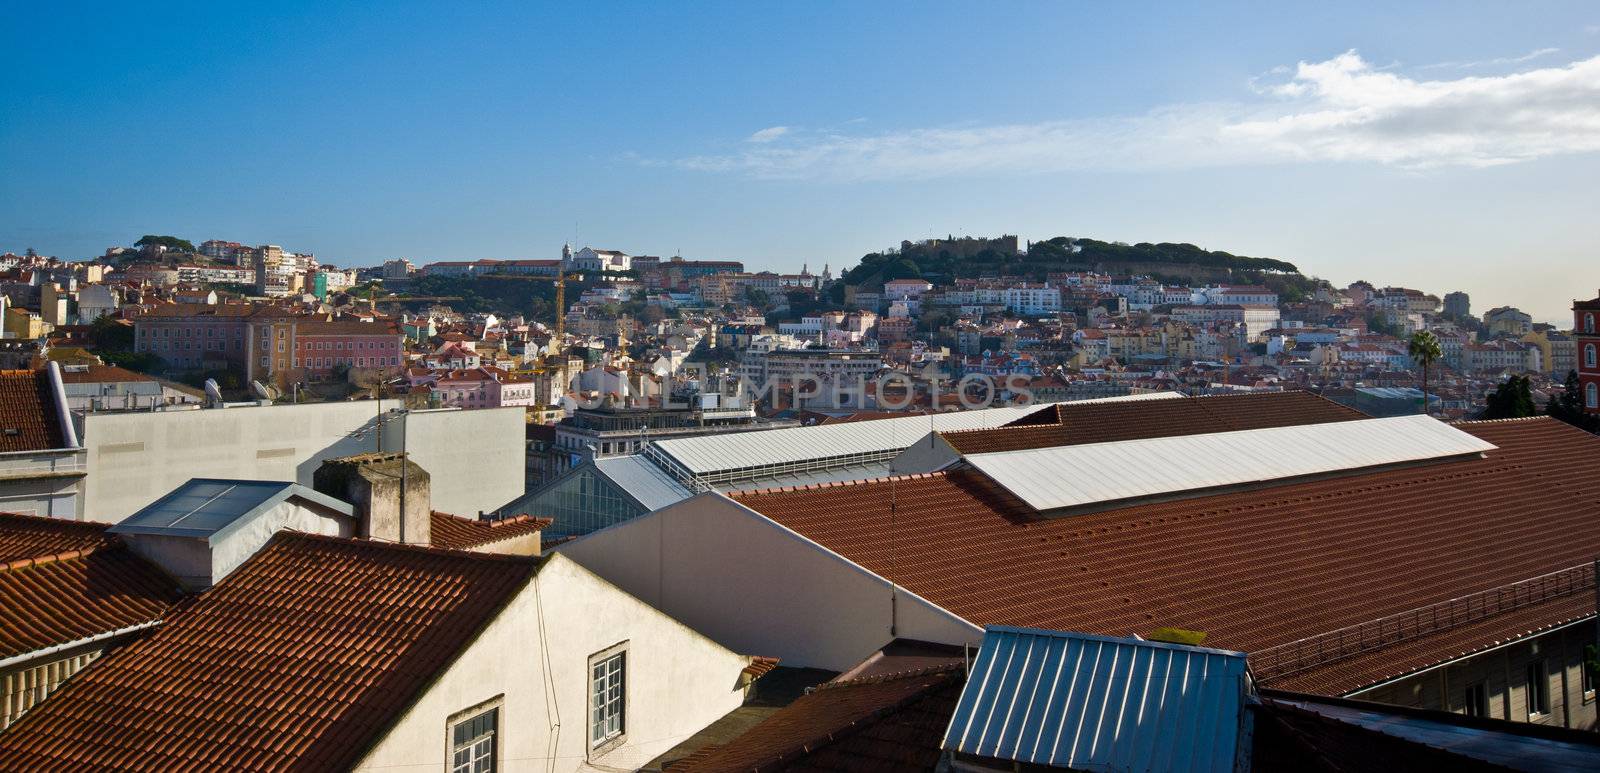 View over Lisbon by Jule_Berlin